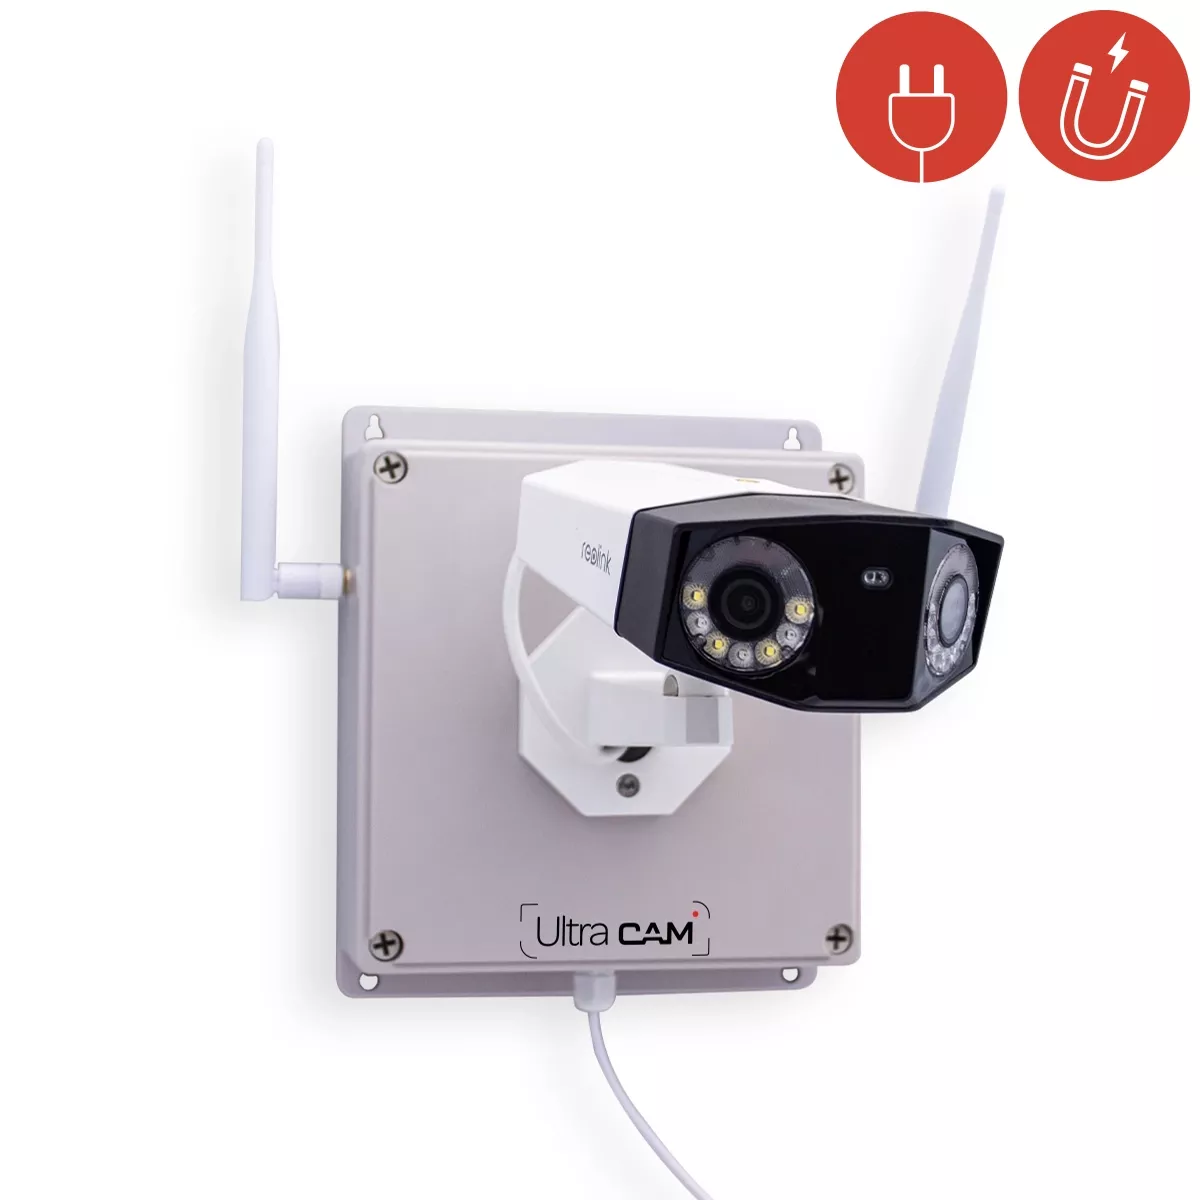 Micro caméra 4G UHD 2K longue autonomie avec détection de